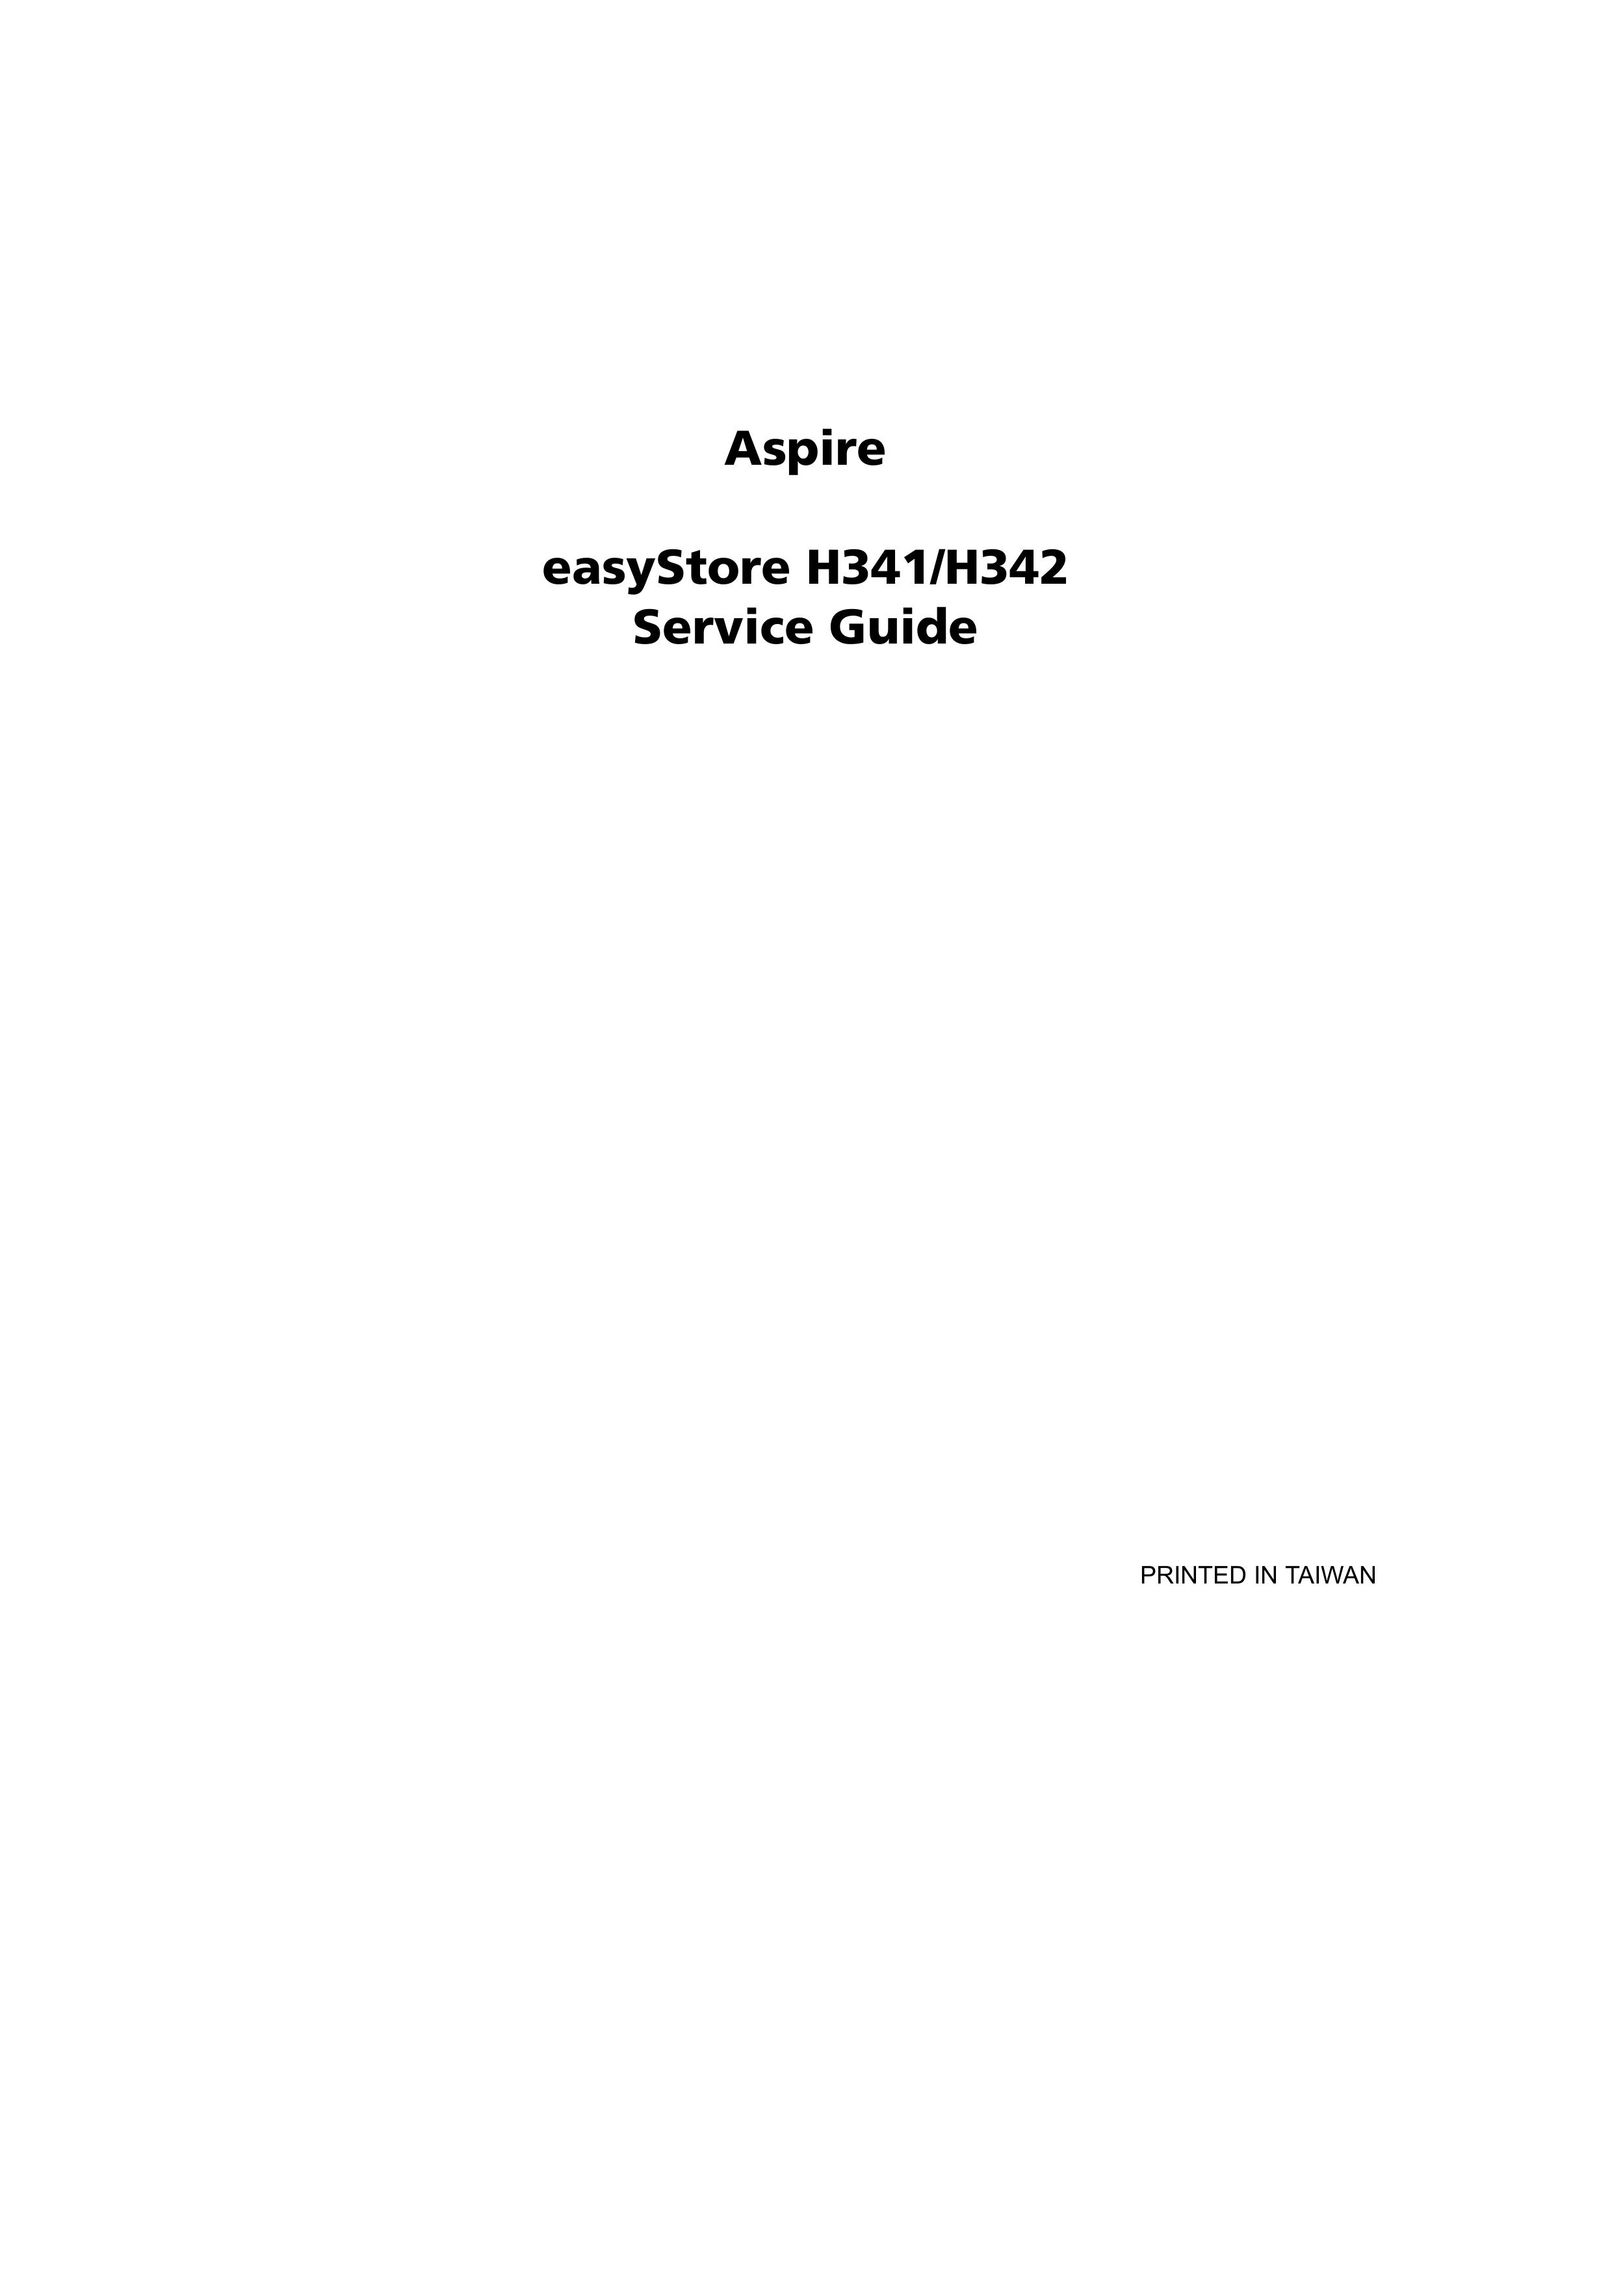 Aspire Digital H342 Personal Computer User Manual